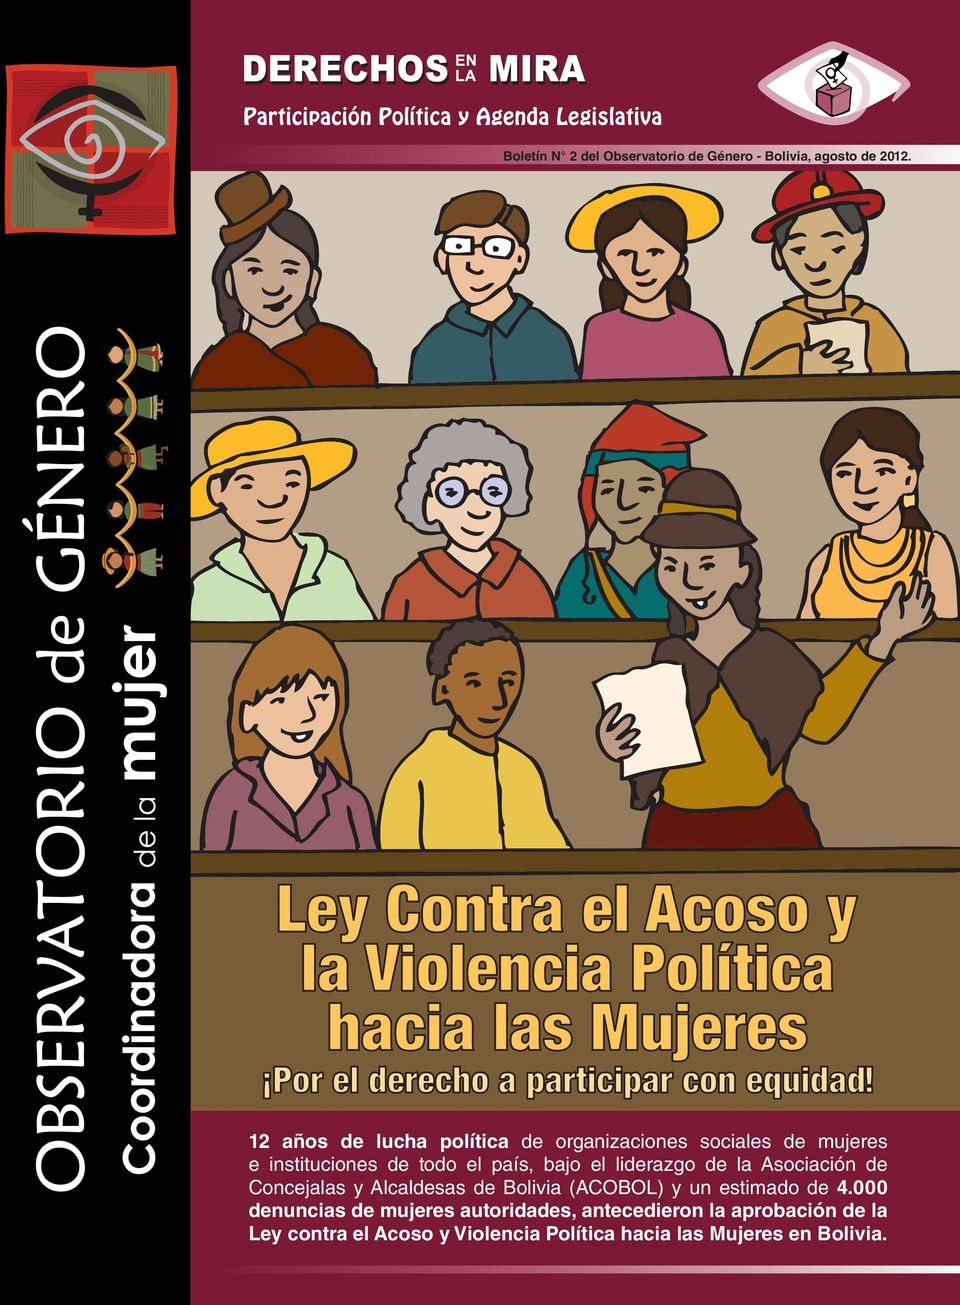 el liderazgo de la Asociación de Concejalas y Alcaldesas de Bolivia (ACOBOL) y un estimado de 4.